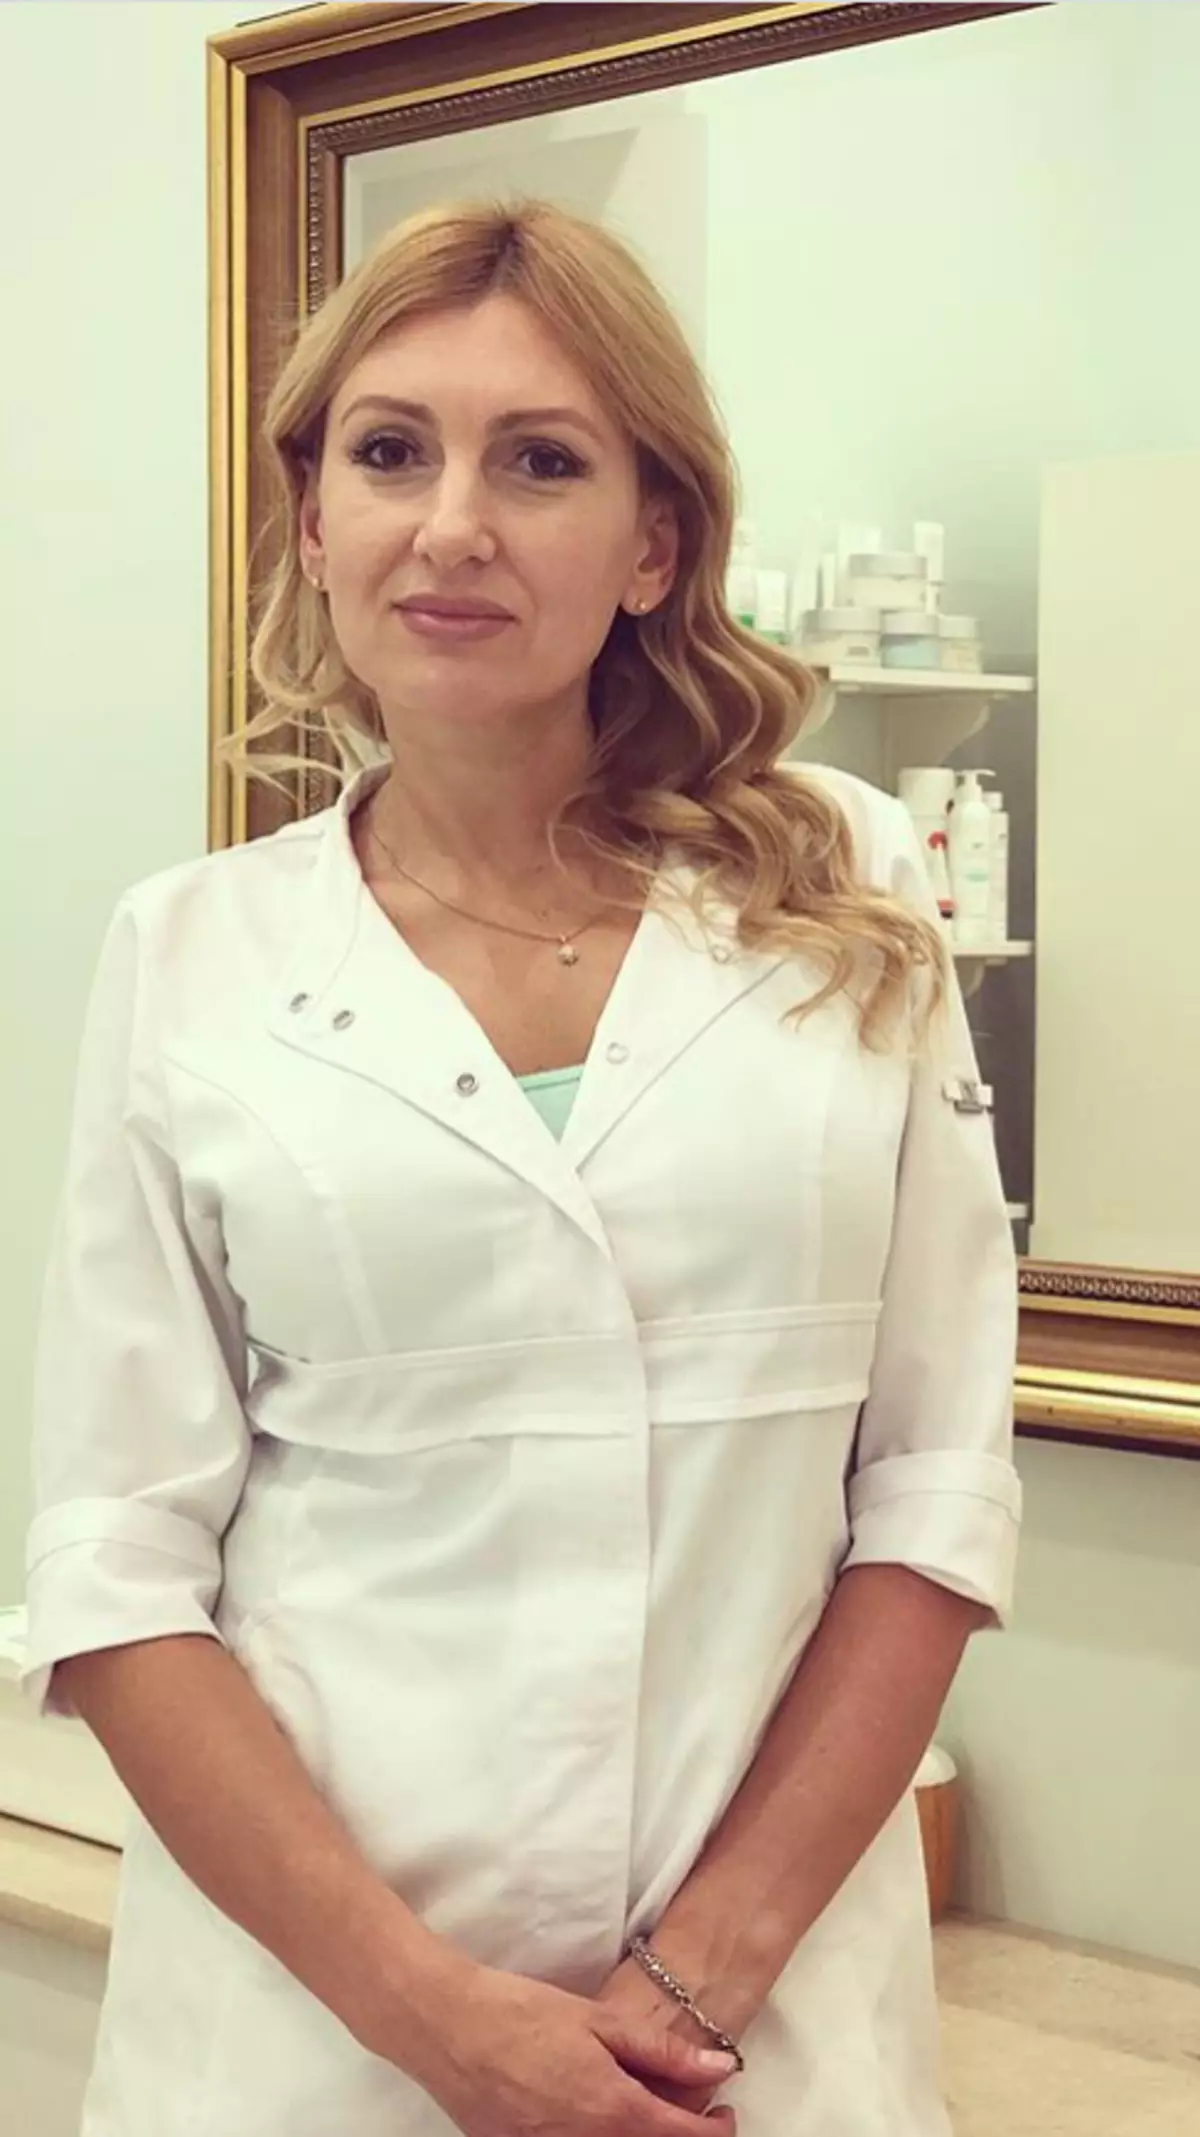 Cosmetologo Alla Yanchenko.